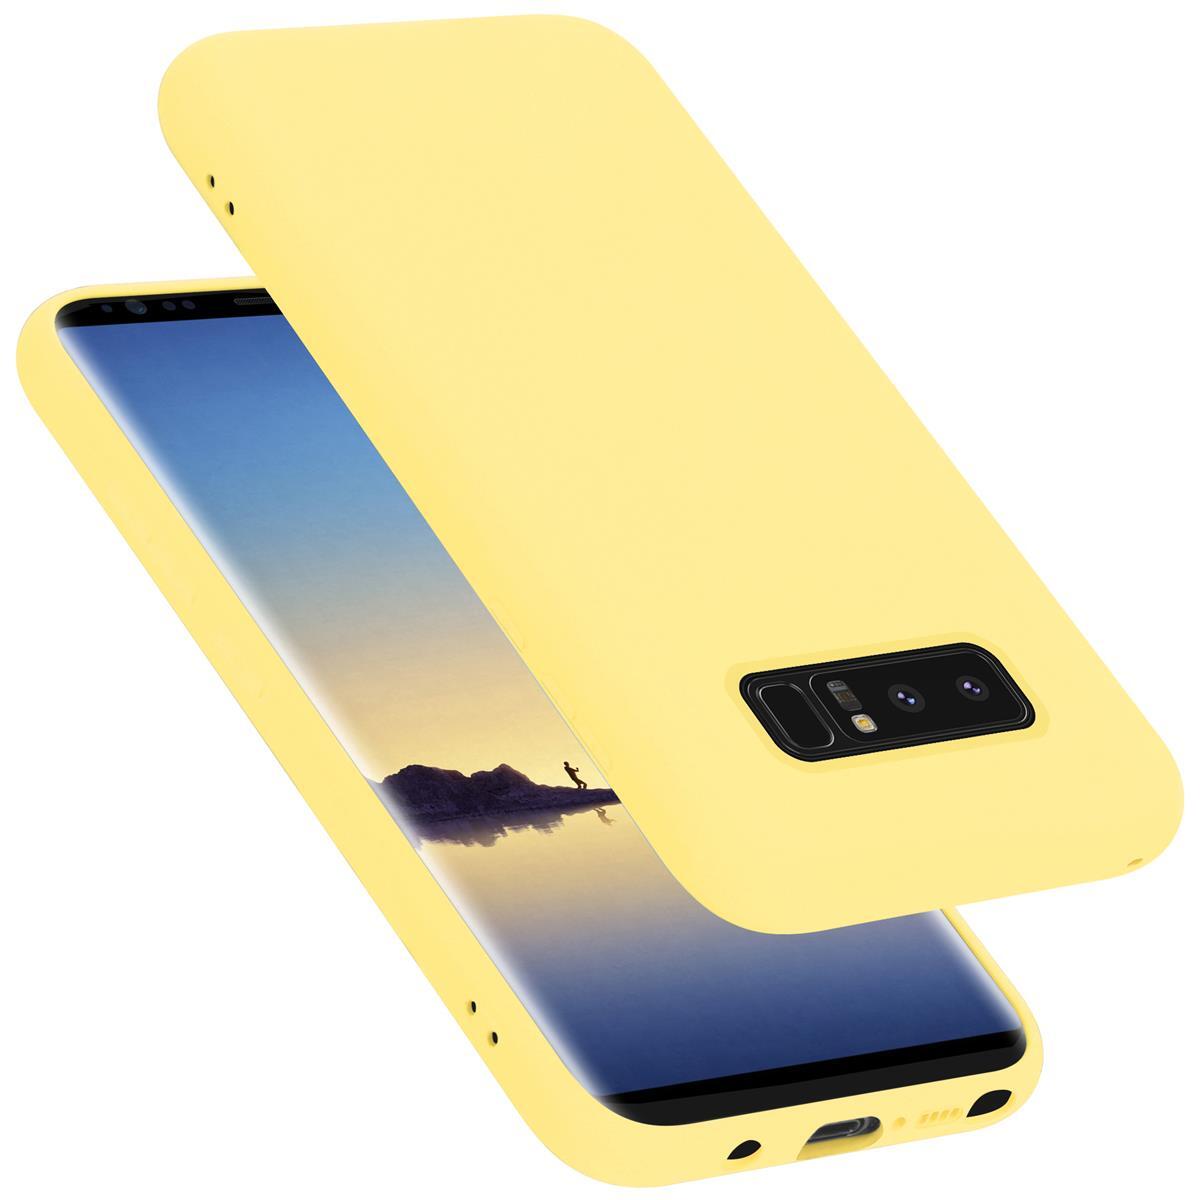 Samsung Galaxy NOTE 8 silikondeksel case (gul) - Elkjøp